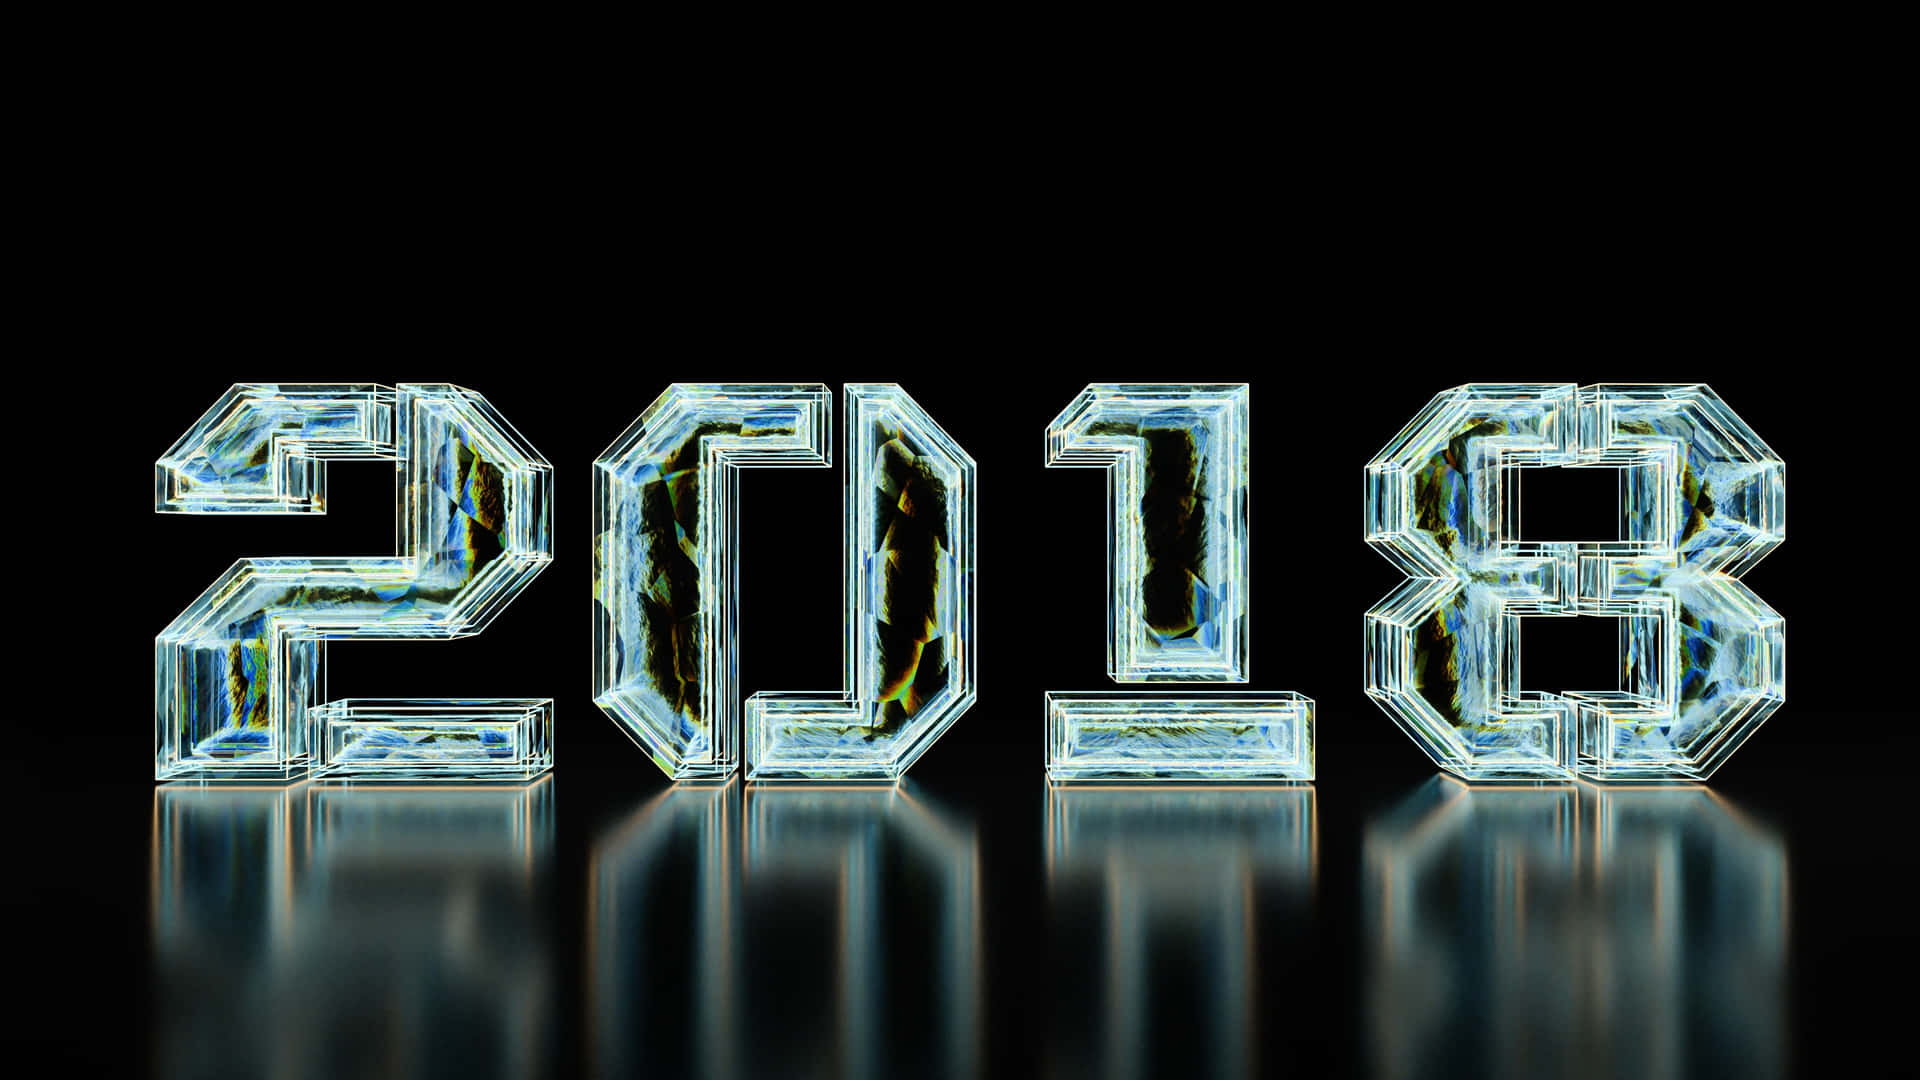 Entdeckensie Die Möglichkeiten Des Neuen Jahres Mit Diesem Hintergrundbild Für 2018.